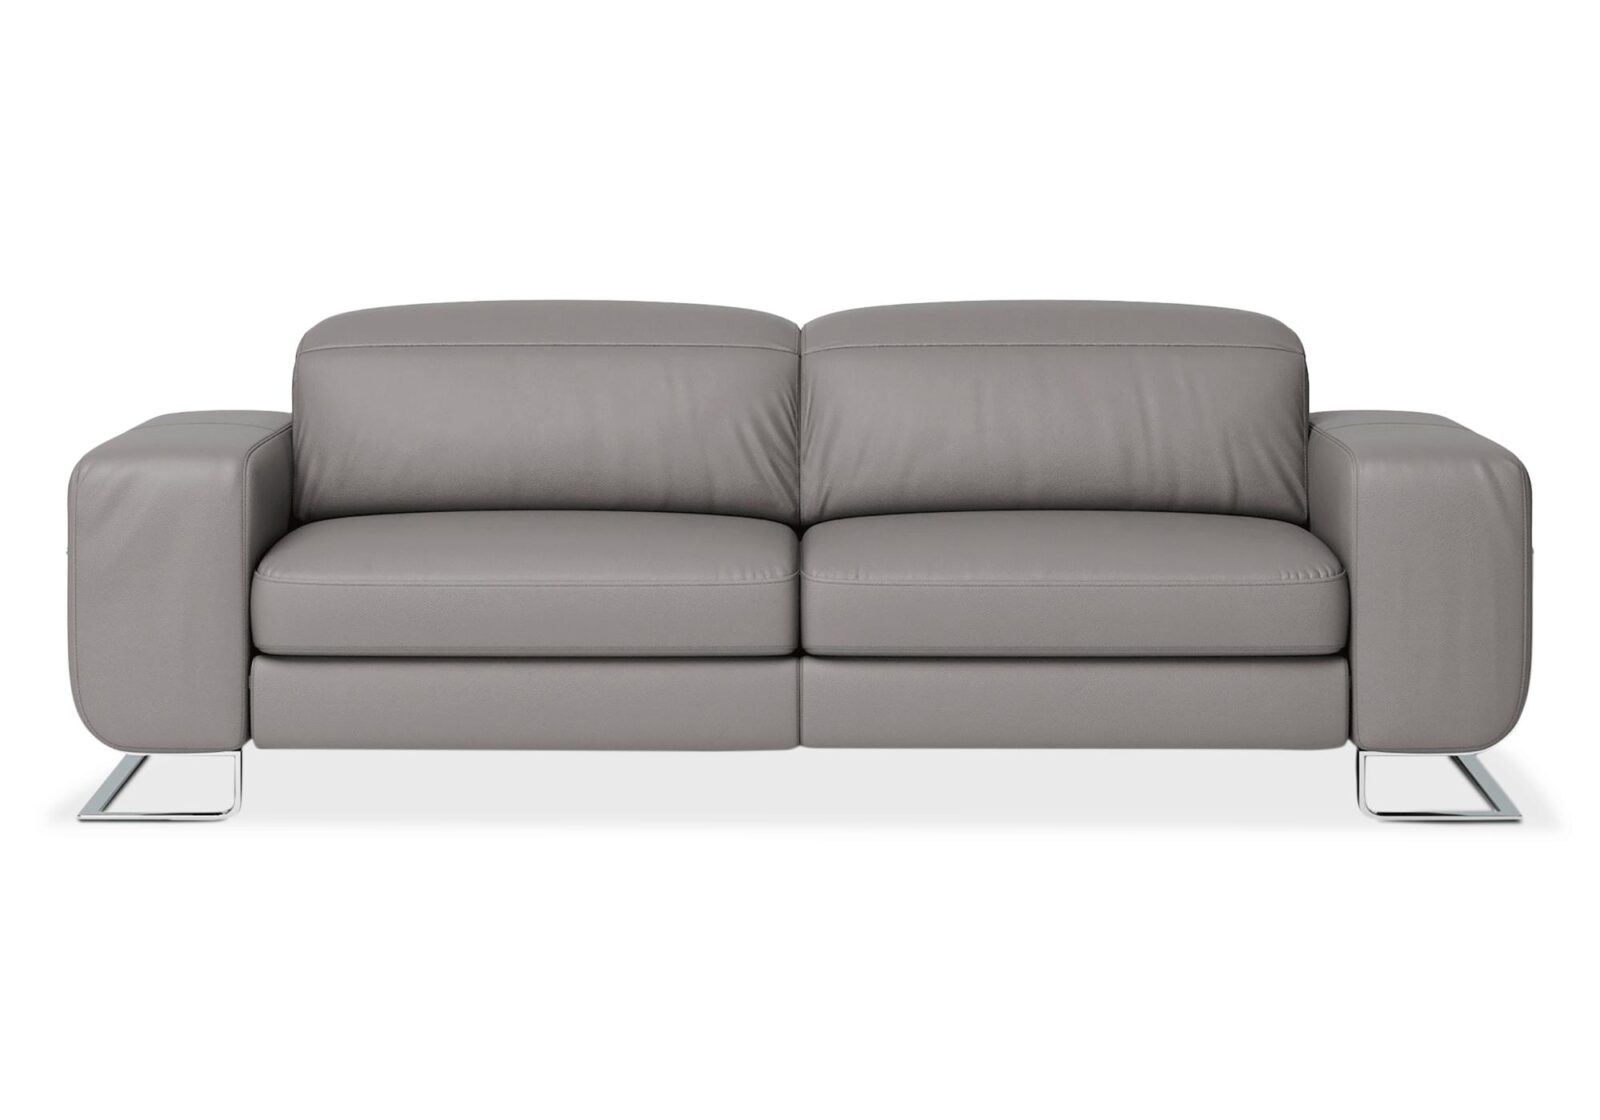 3er Sofa 8151 Joop mit Kopfstützen. Bezug: Leder. Farbe: Grau. Erhältlich bei Möbel Gallati.